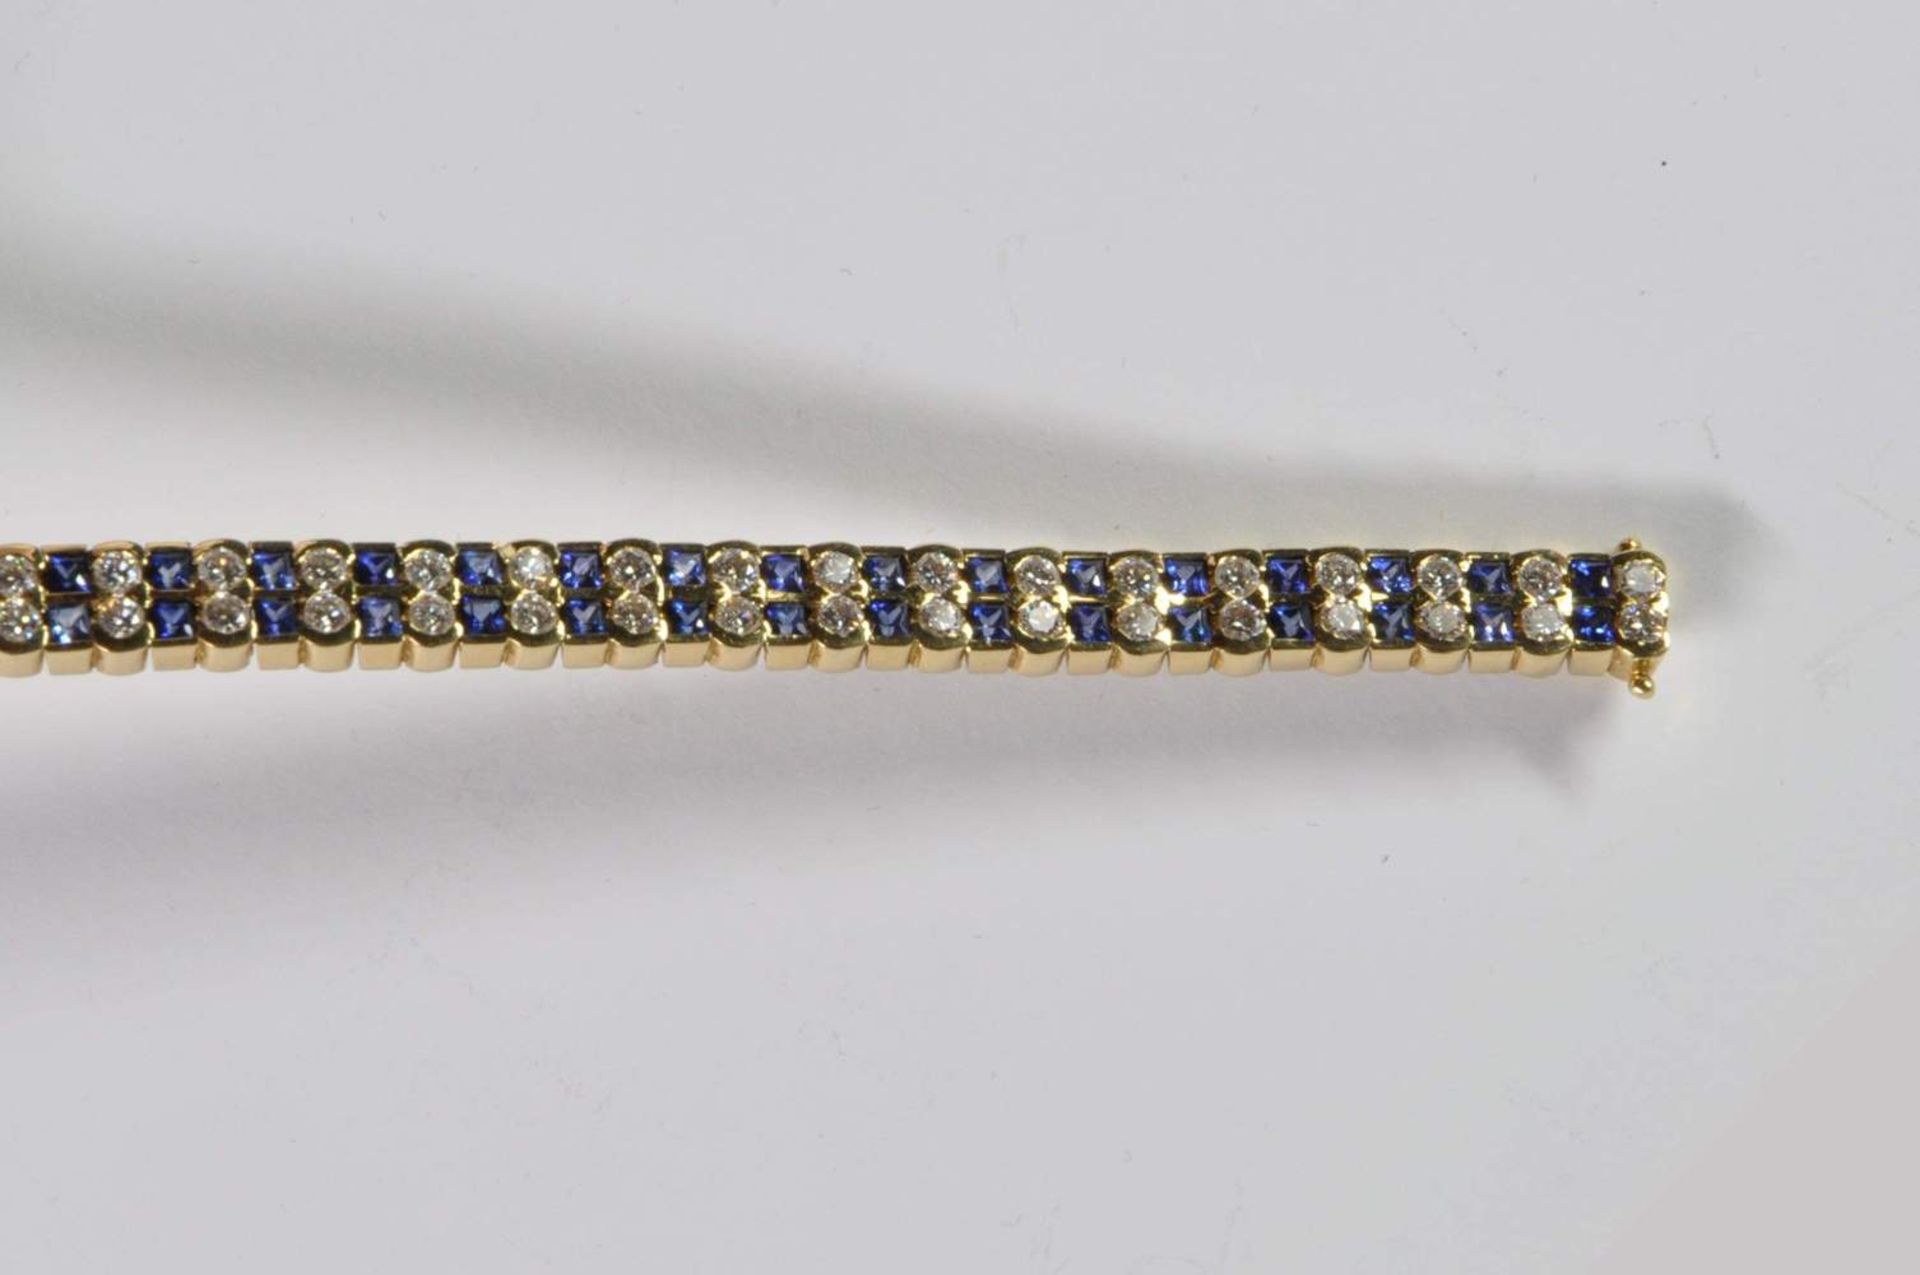 Saphir-Brillant-Armband, 750 Gelbgold, Punze, 66 Brillanten von zus. ca. 3,2ct, 64 Saphiren von zus. - Bild 3 aus 20